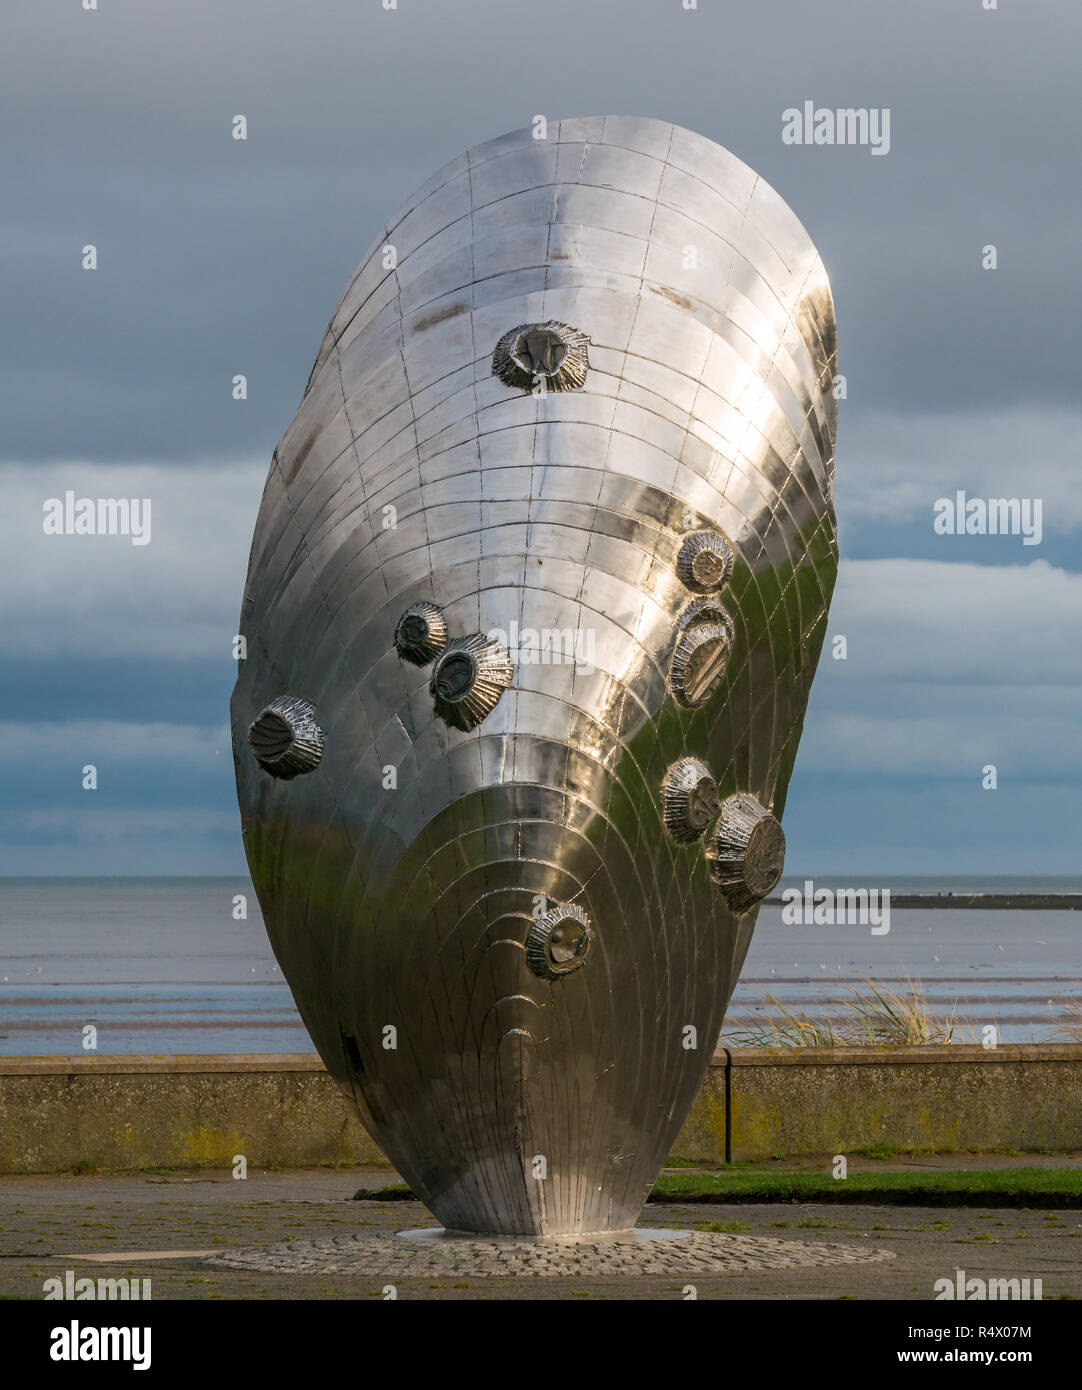 Sculpture d'art en acier inoxydable par Michael Johnson a appelé la mémoire et réflexion dans la forme de la coquille de moule verte, Murdoch, Musselburgh, Écosse, Royaume-Uni Banque D'Images